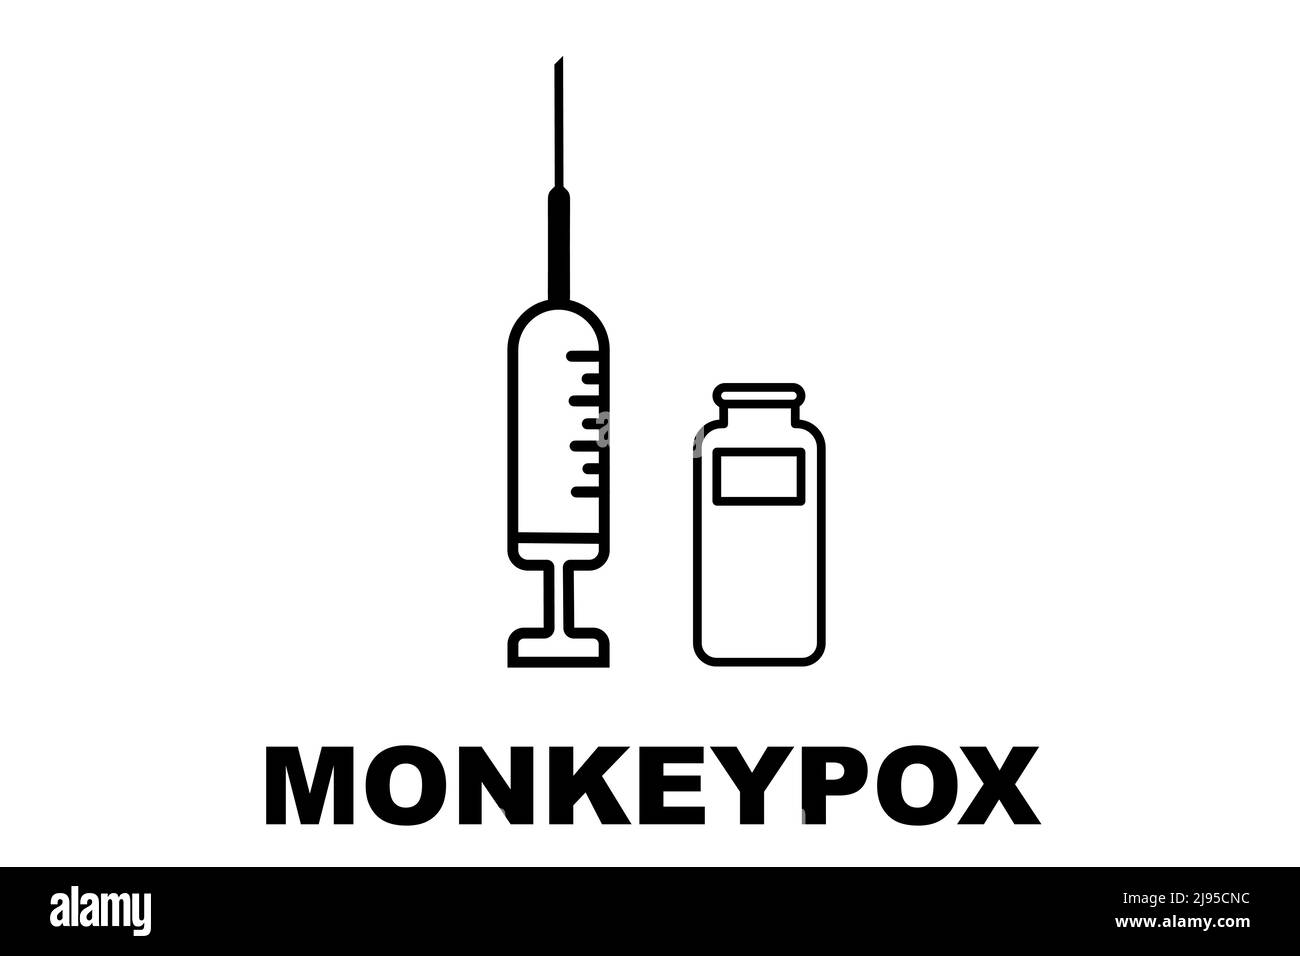 Impfstoff. Monkeypox. Pockenimpfstoff. Design eines Impfstoffs mit der Injektion, der Spritze und dem Fläschchen. Impfstoff gegen Monkeypox. Illustratives Design. Stockfoto